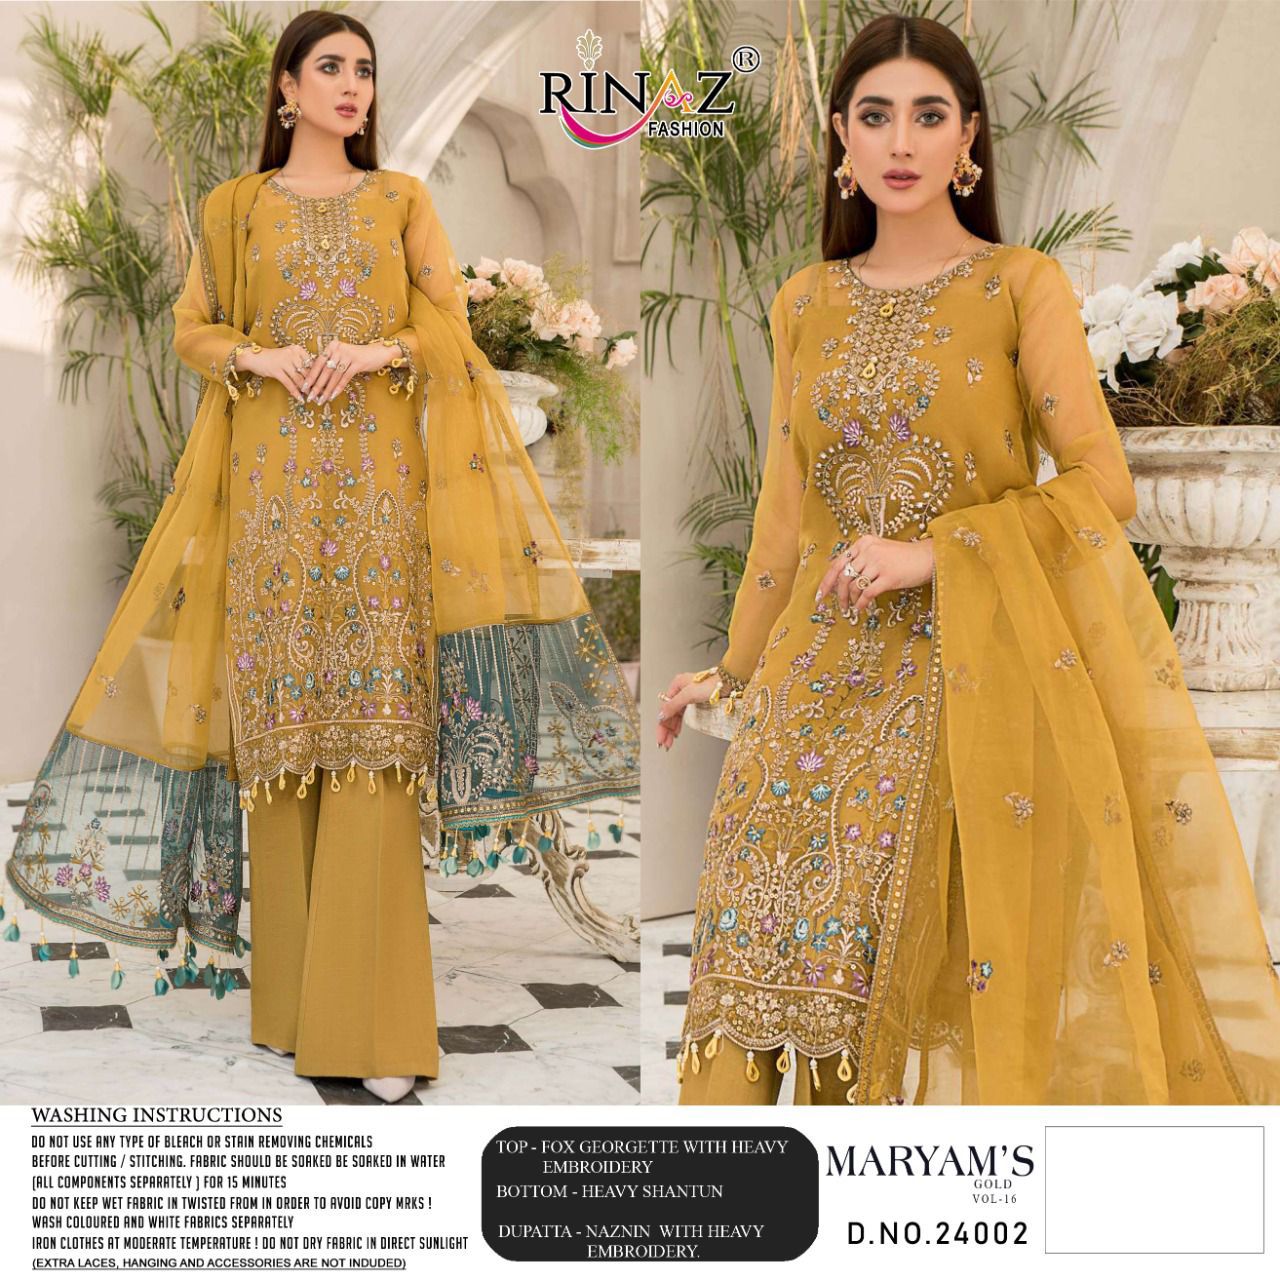 Rinaz Fashion Maryam's Gold 24002